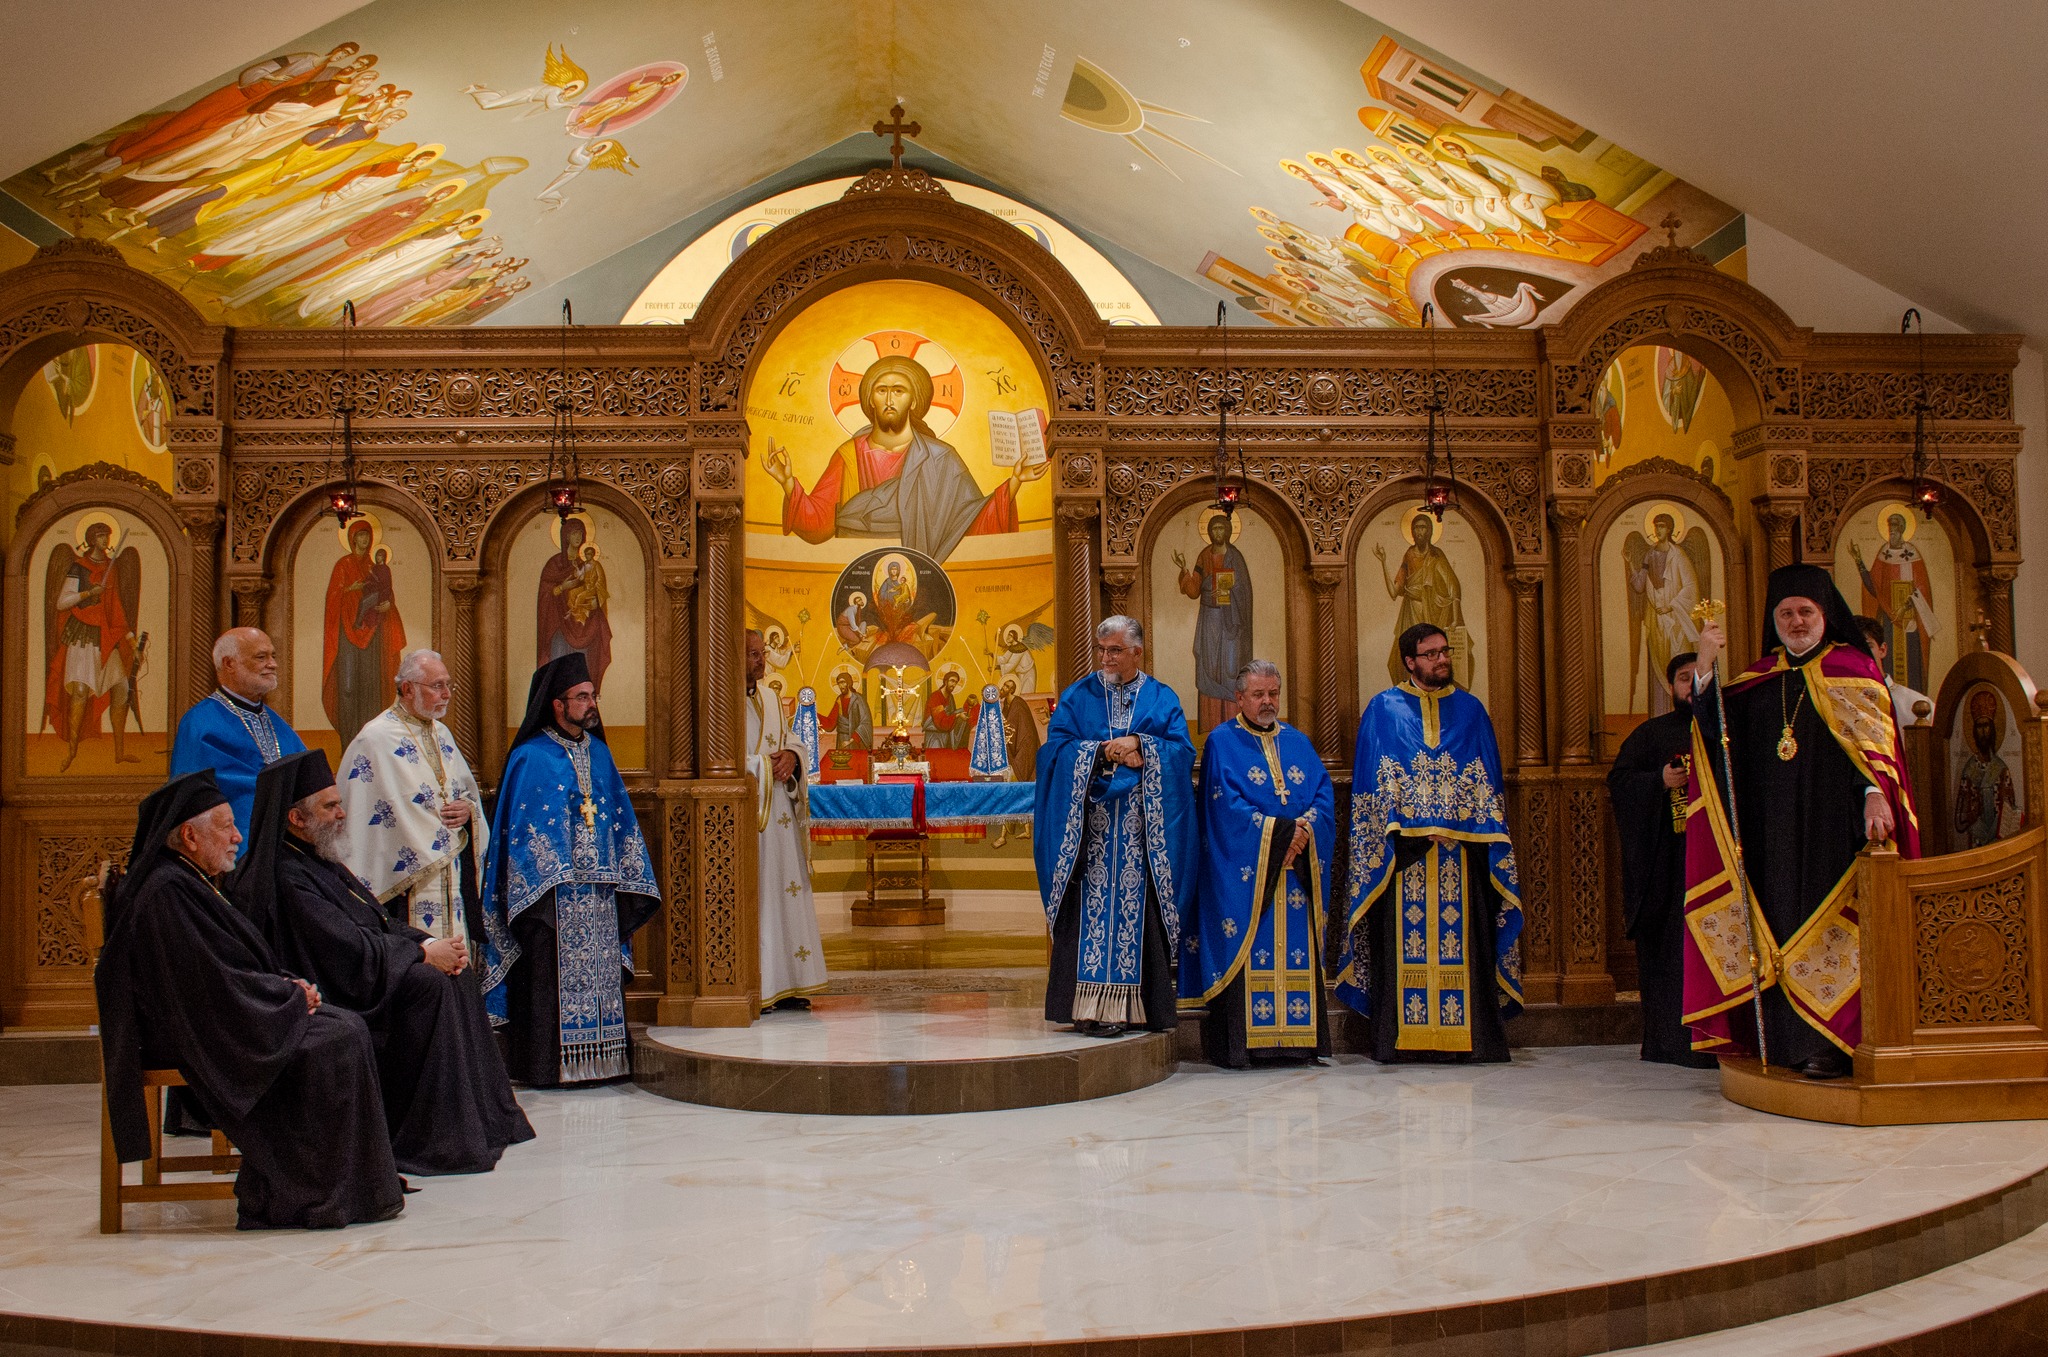 Η Αρχιεπισκοπή των Ηνωμένων Πολιτειών ηγείται της Ελληνικής Ορθόδοξης Εκκλησίας της Τυρανυχίας της Αγίας Άννας στο Σολτ Λέικ Σίτι της Γιούτα